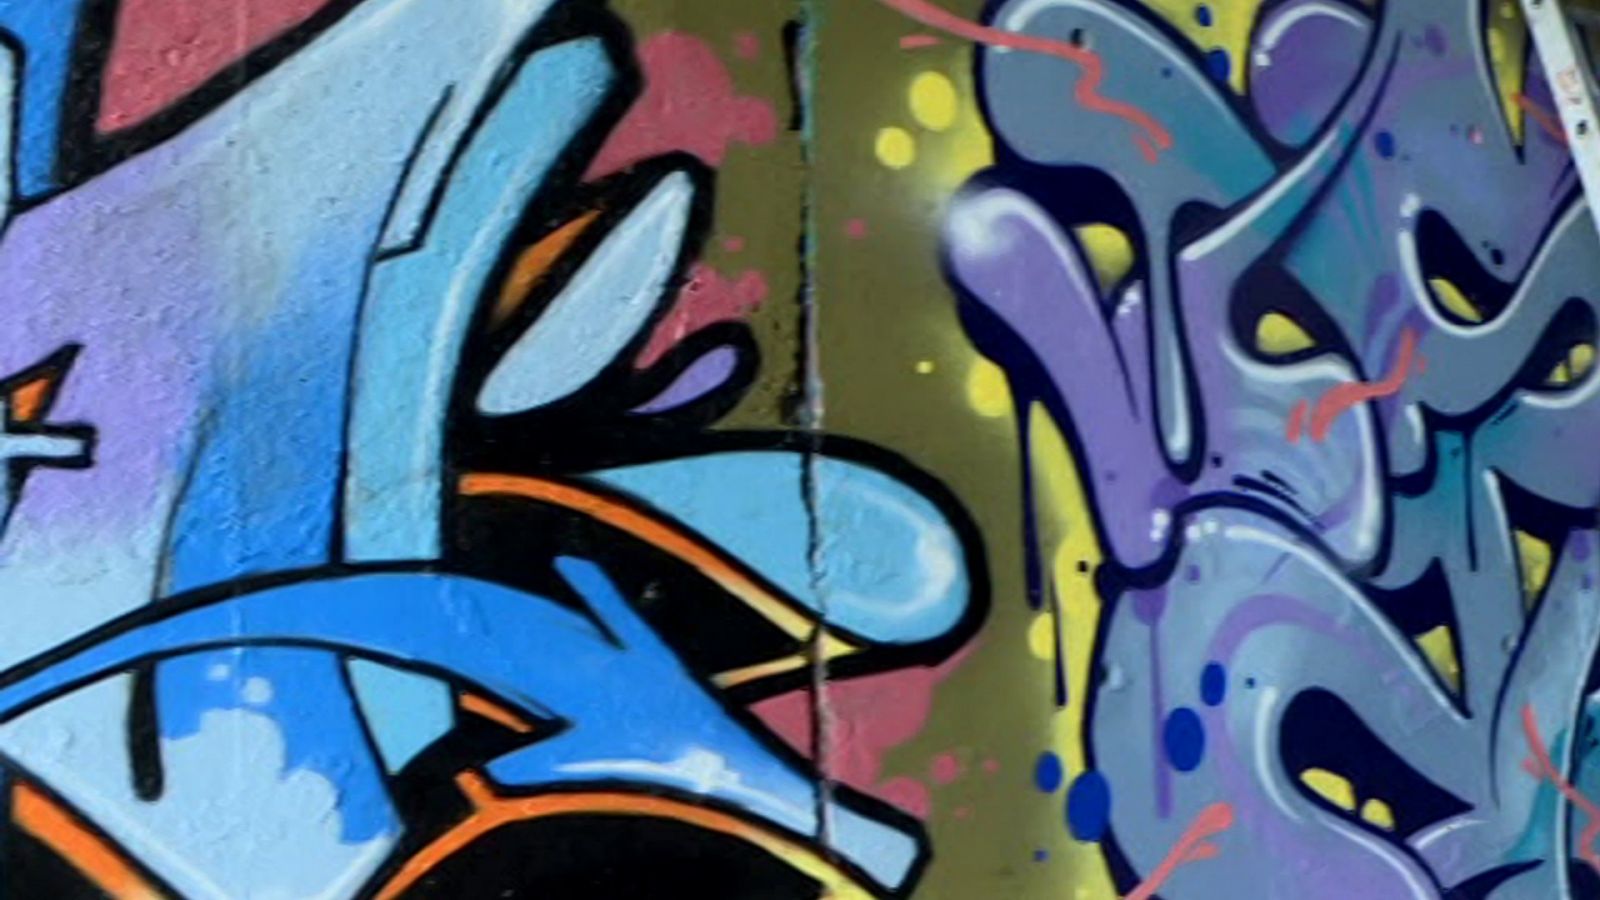 Repor - La guerra del graffiti - RTVE.es